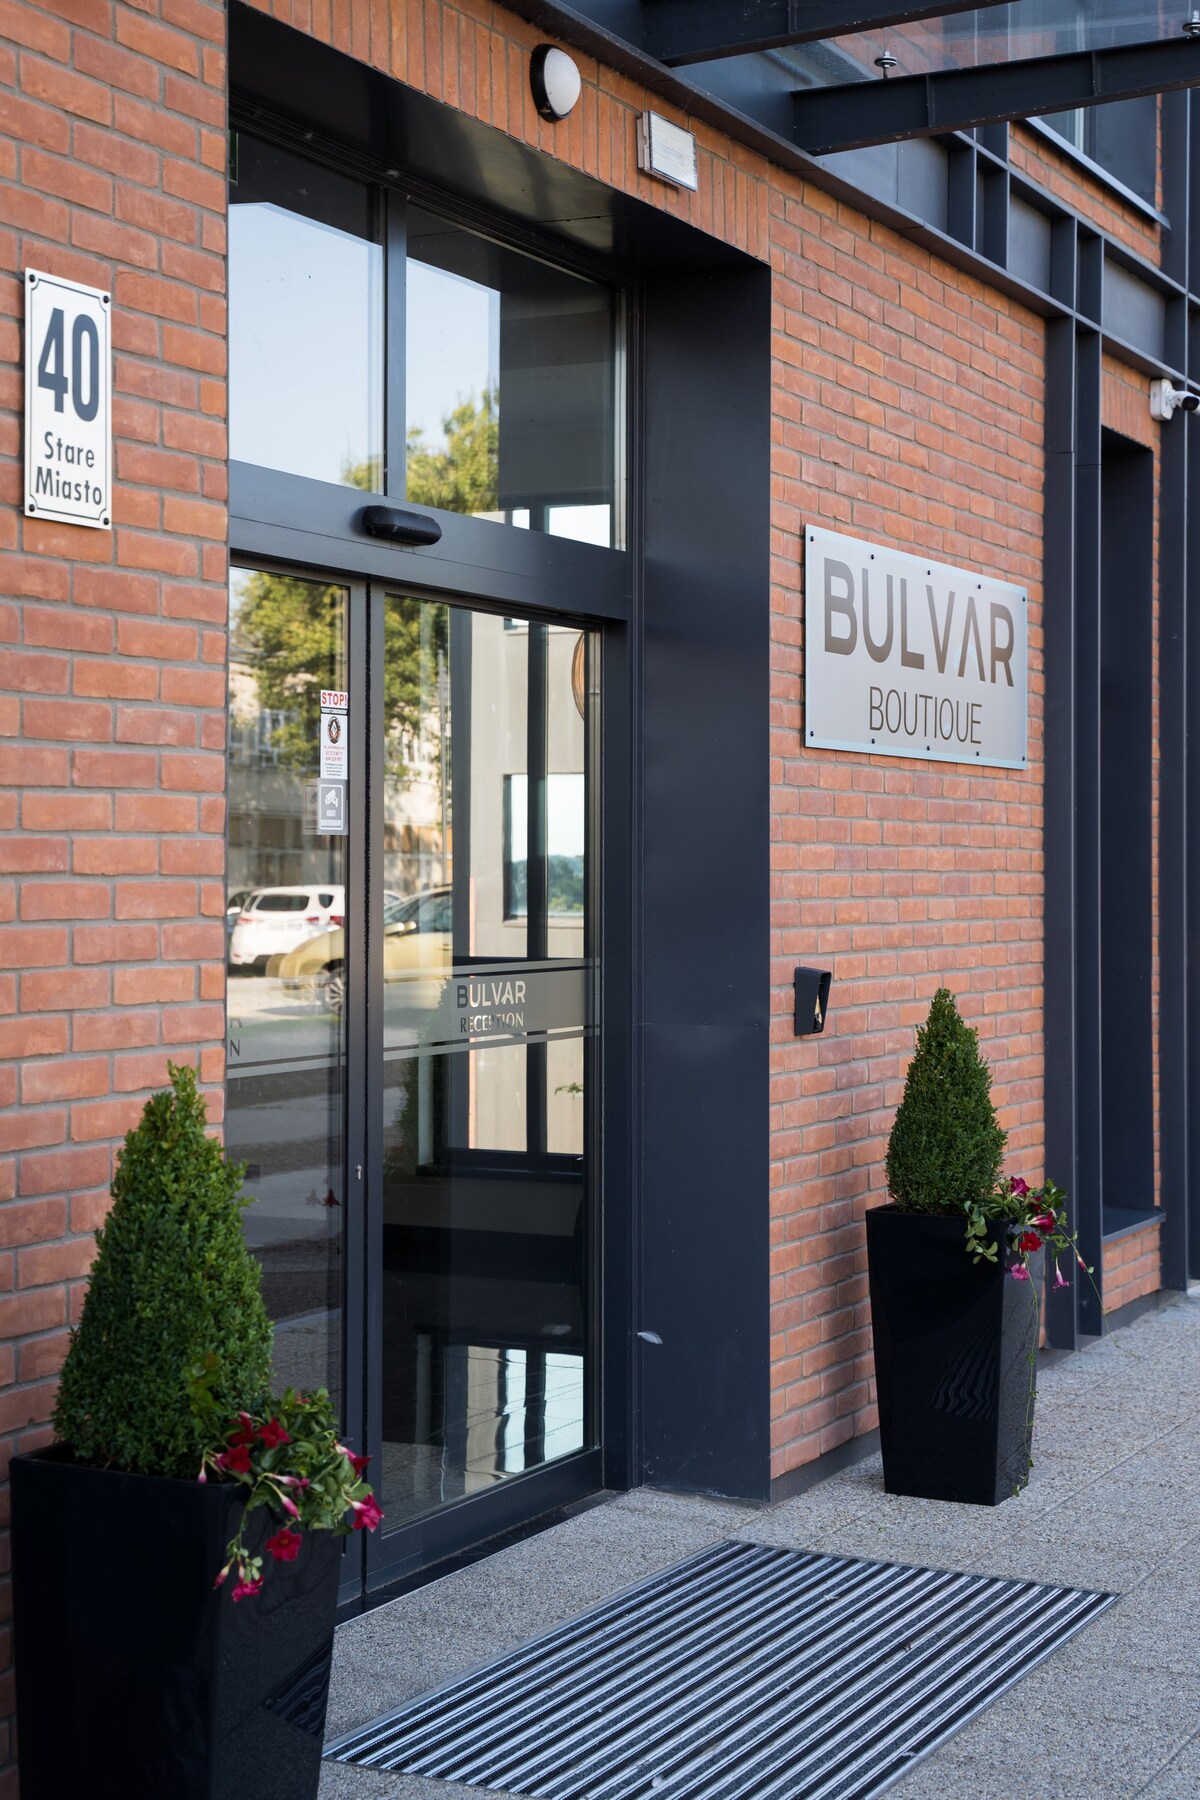 Bulvar Boutique - Pokój dwuosobowy typu Standard